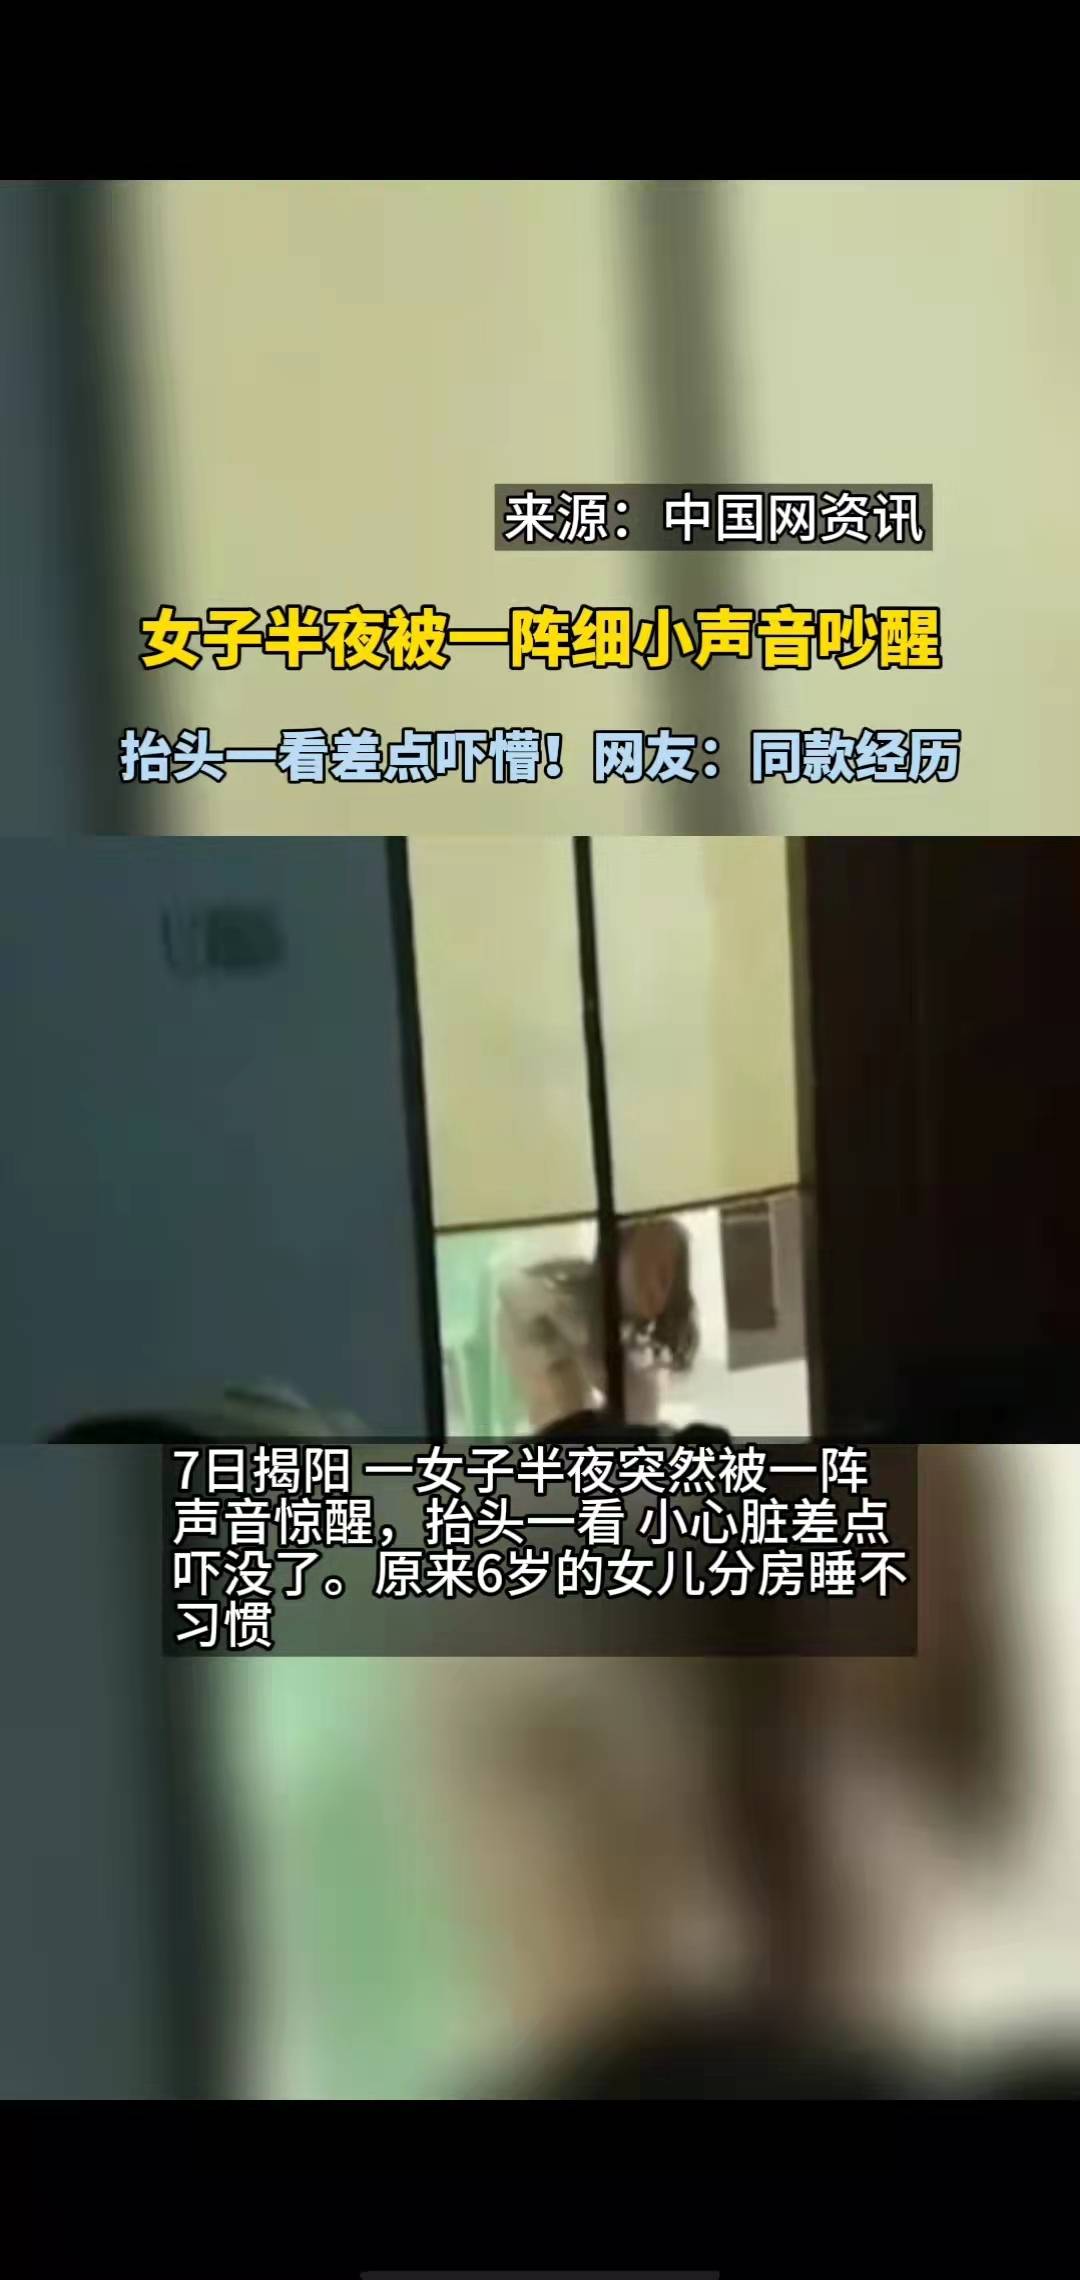 民生小事 | 男子醉酒躺路边 巡逻民警急救助_深圳新闻网